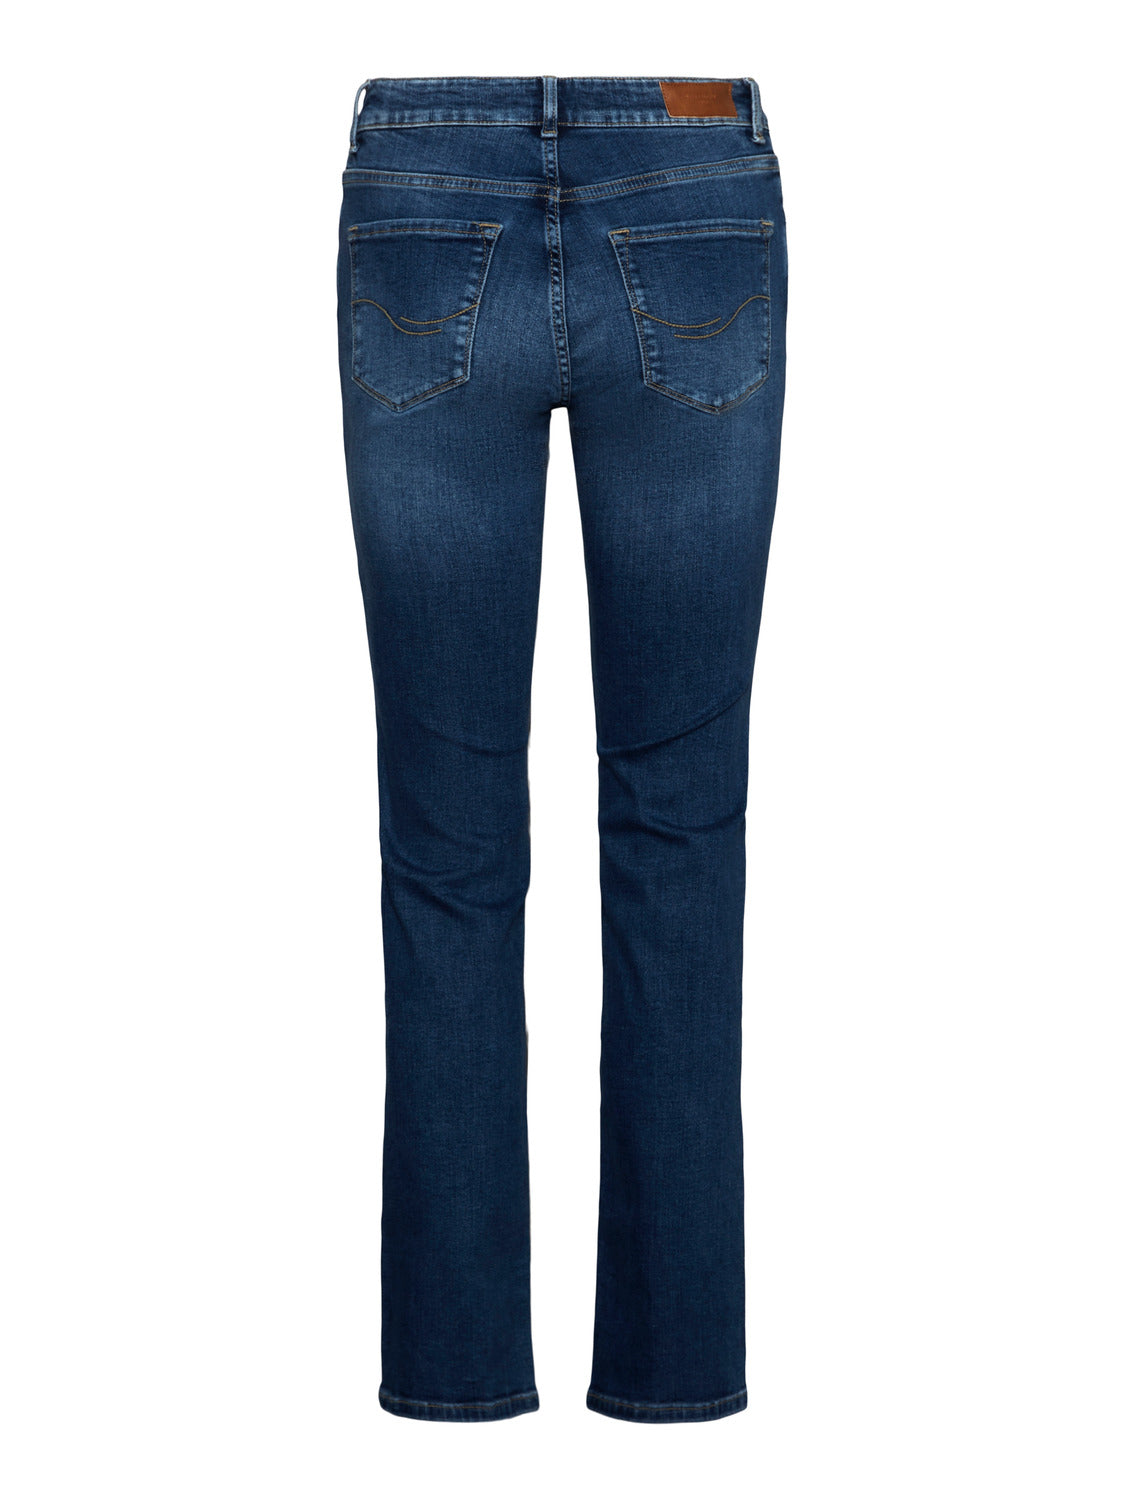 VMDAF Jeans - Medium Blue Denim